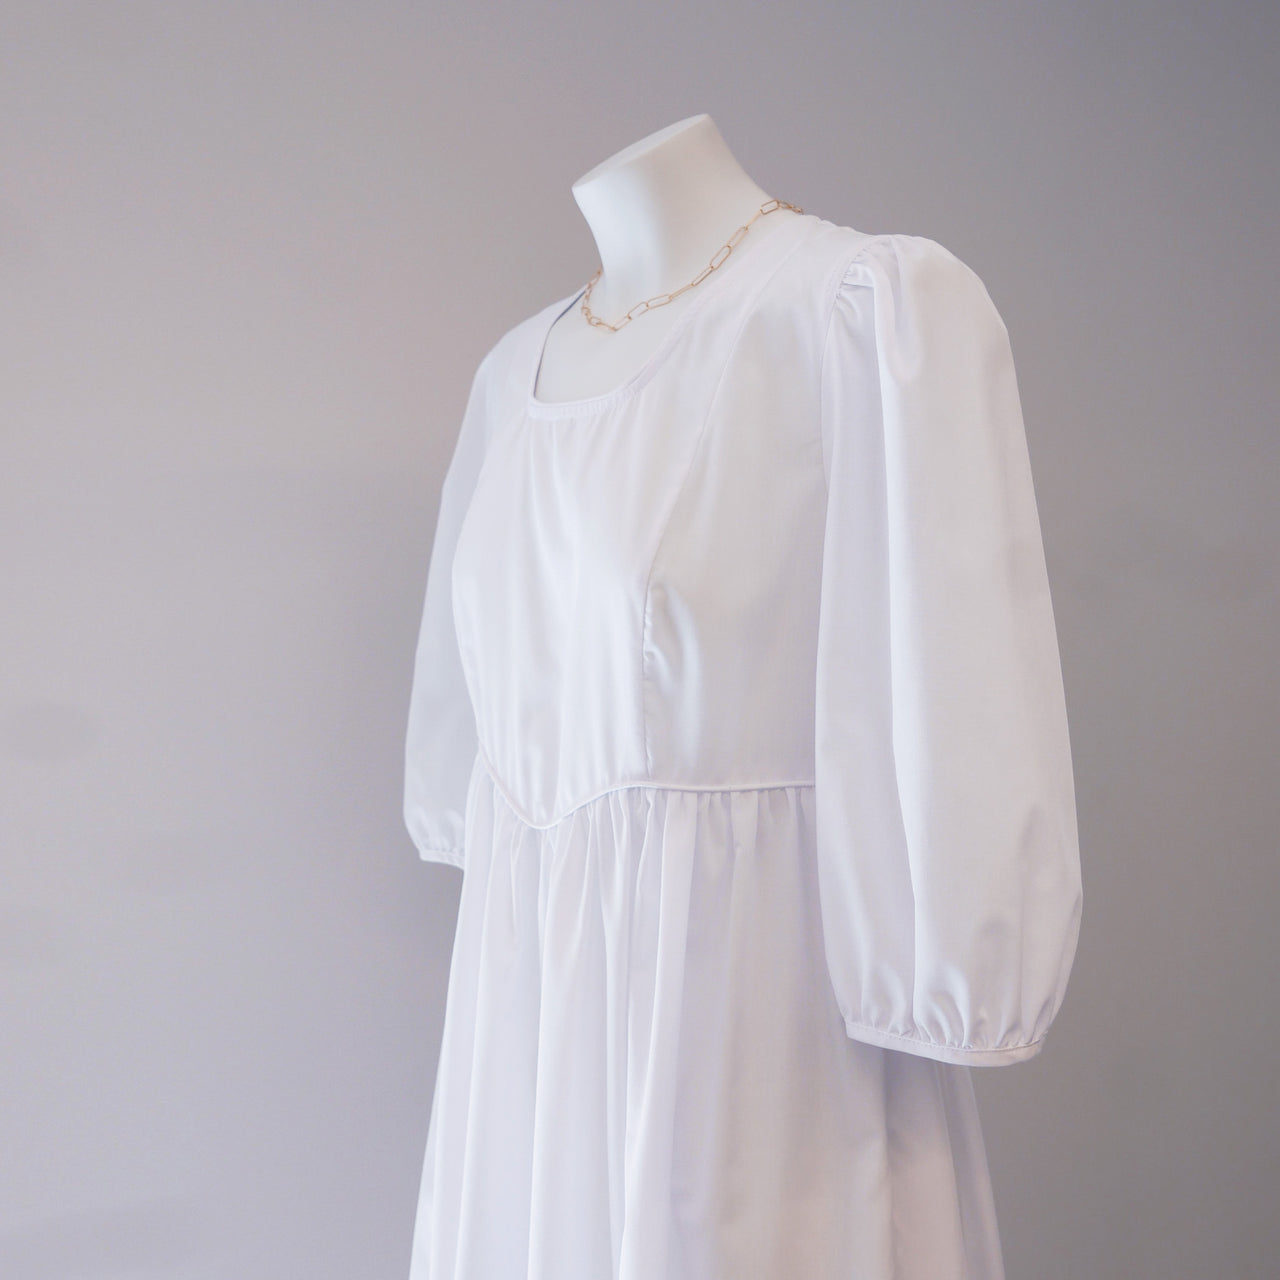 Empire Dress in White Cotton